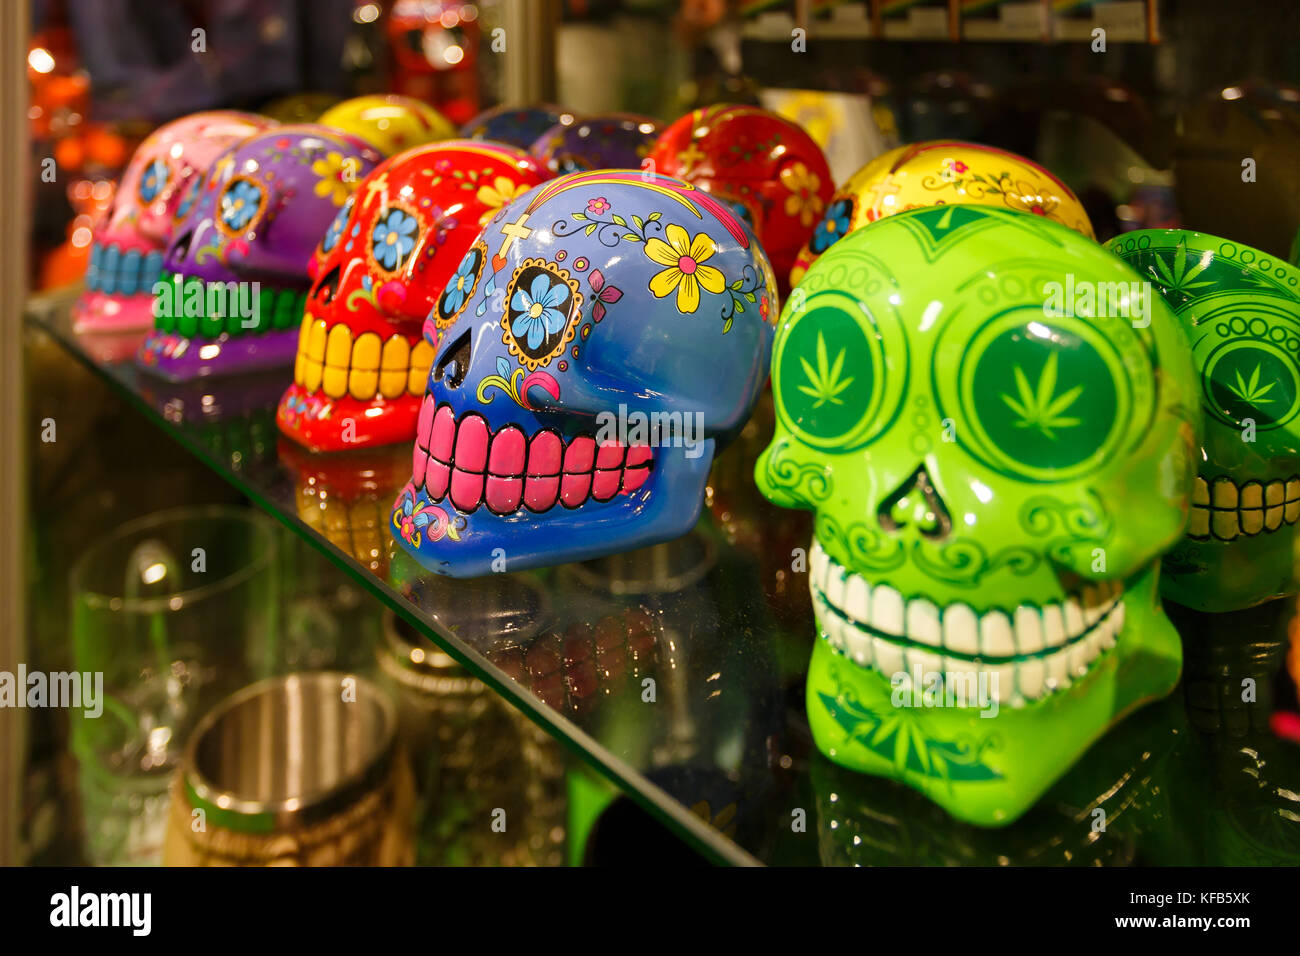 Amsterdam, Pays-Bas - 24 septembre 2017 : esquisses peintes de crânes de la marijuana sur la fenêtre Cas d'amsterdam boutique de souvenirs Banque D'Images